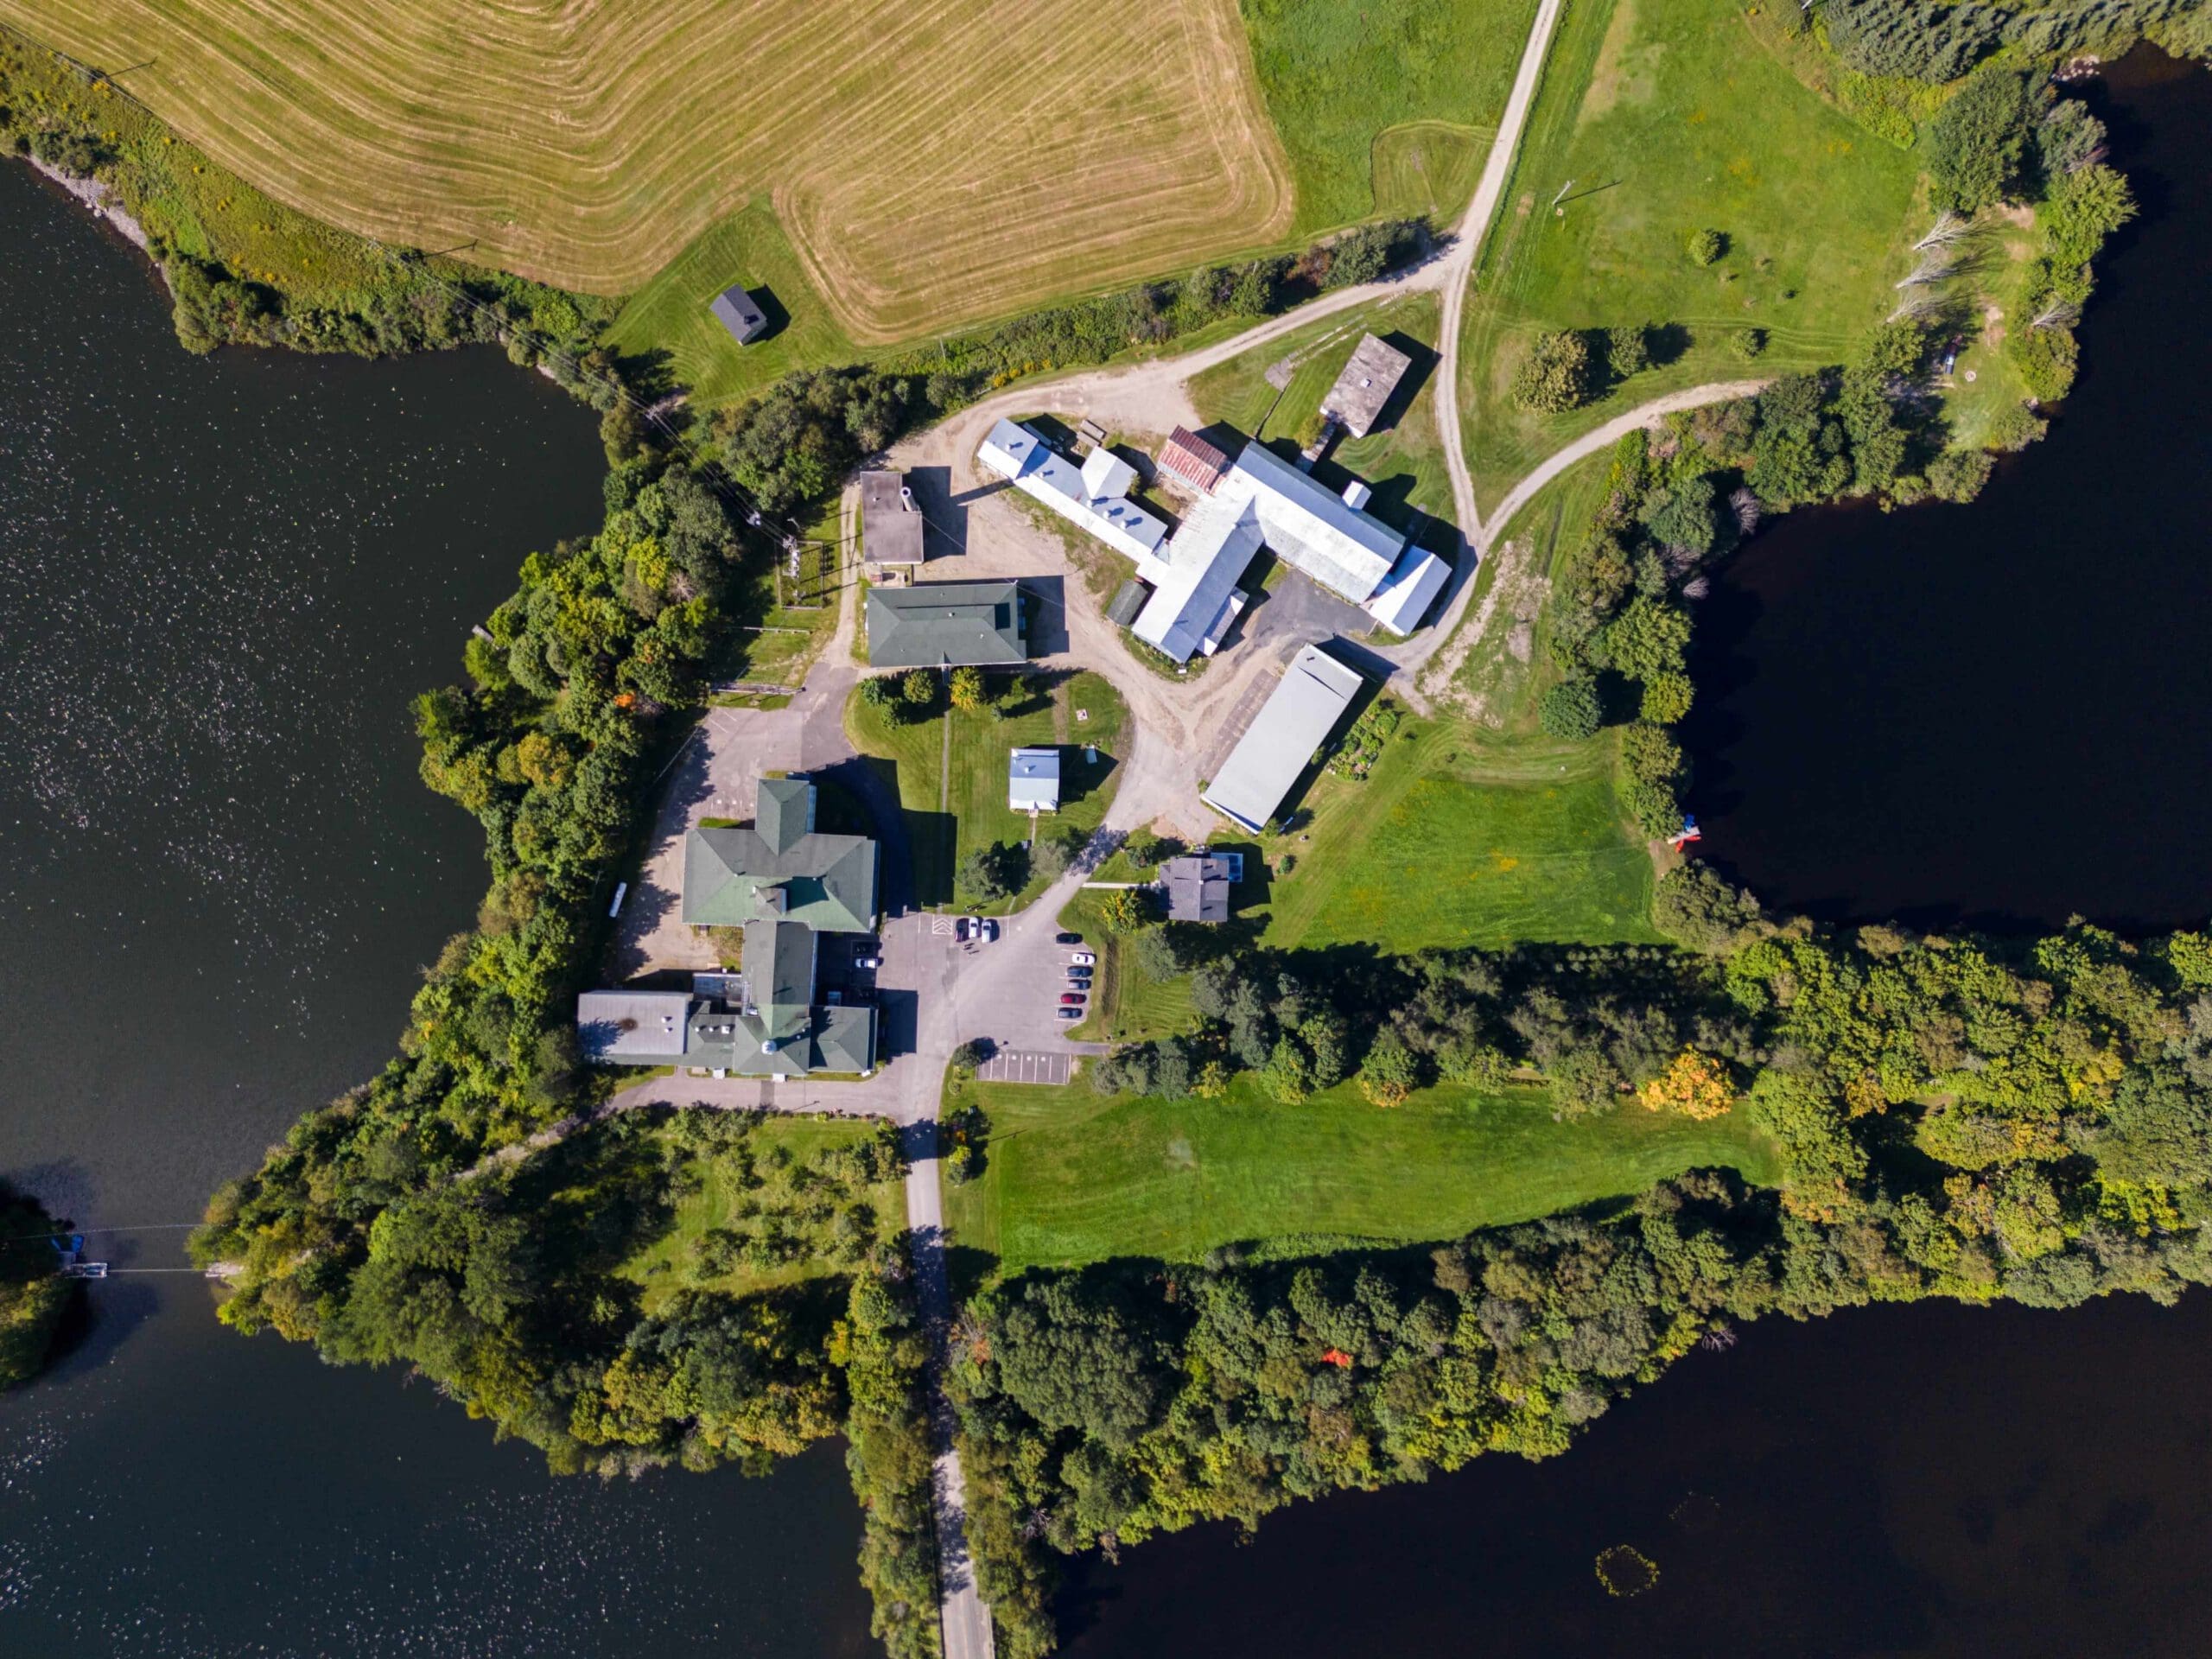 Vue aérienne d'un complexe agricole rural au bord d'un lac, montrant les bâtiments, les champs, les routes et les espaces verts environnants.